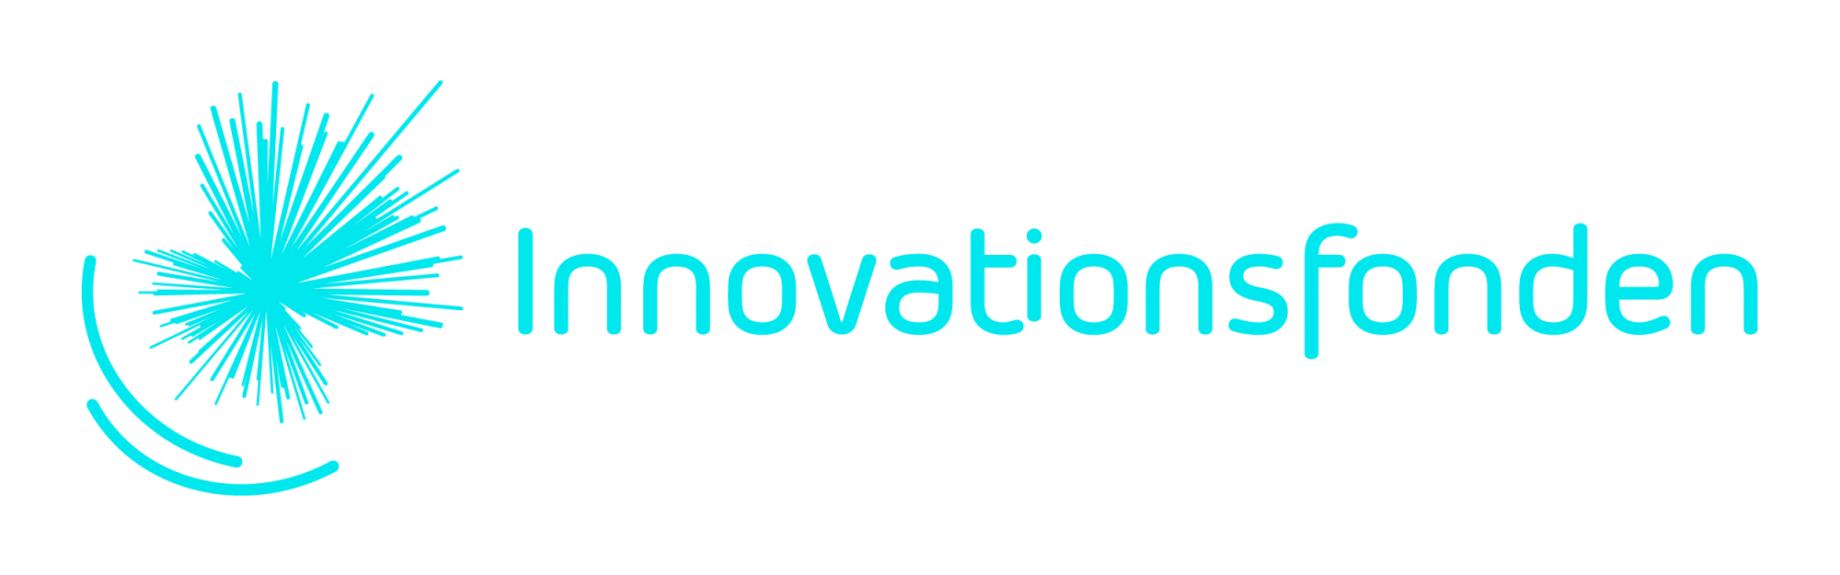 Logo Innovationsfonden